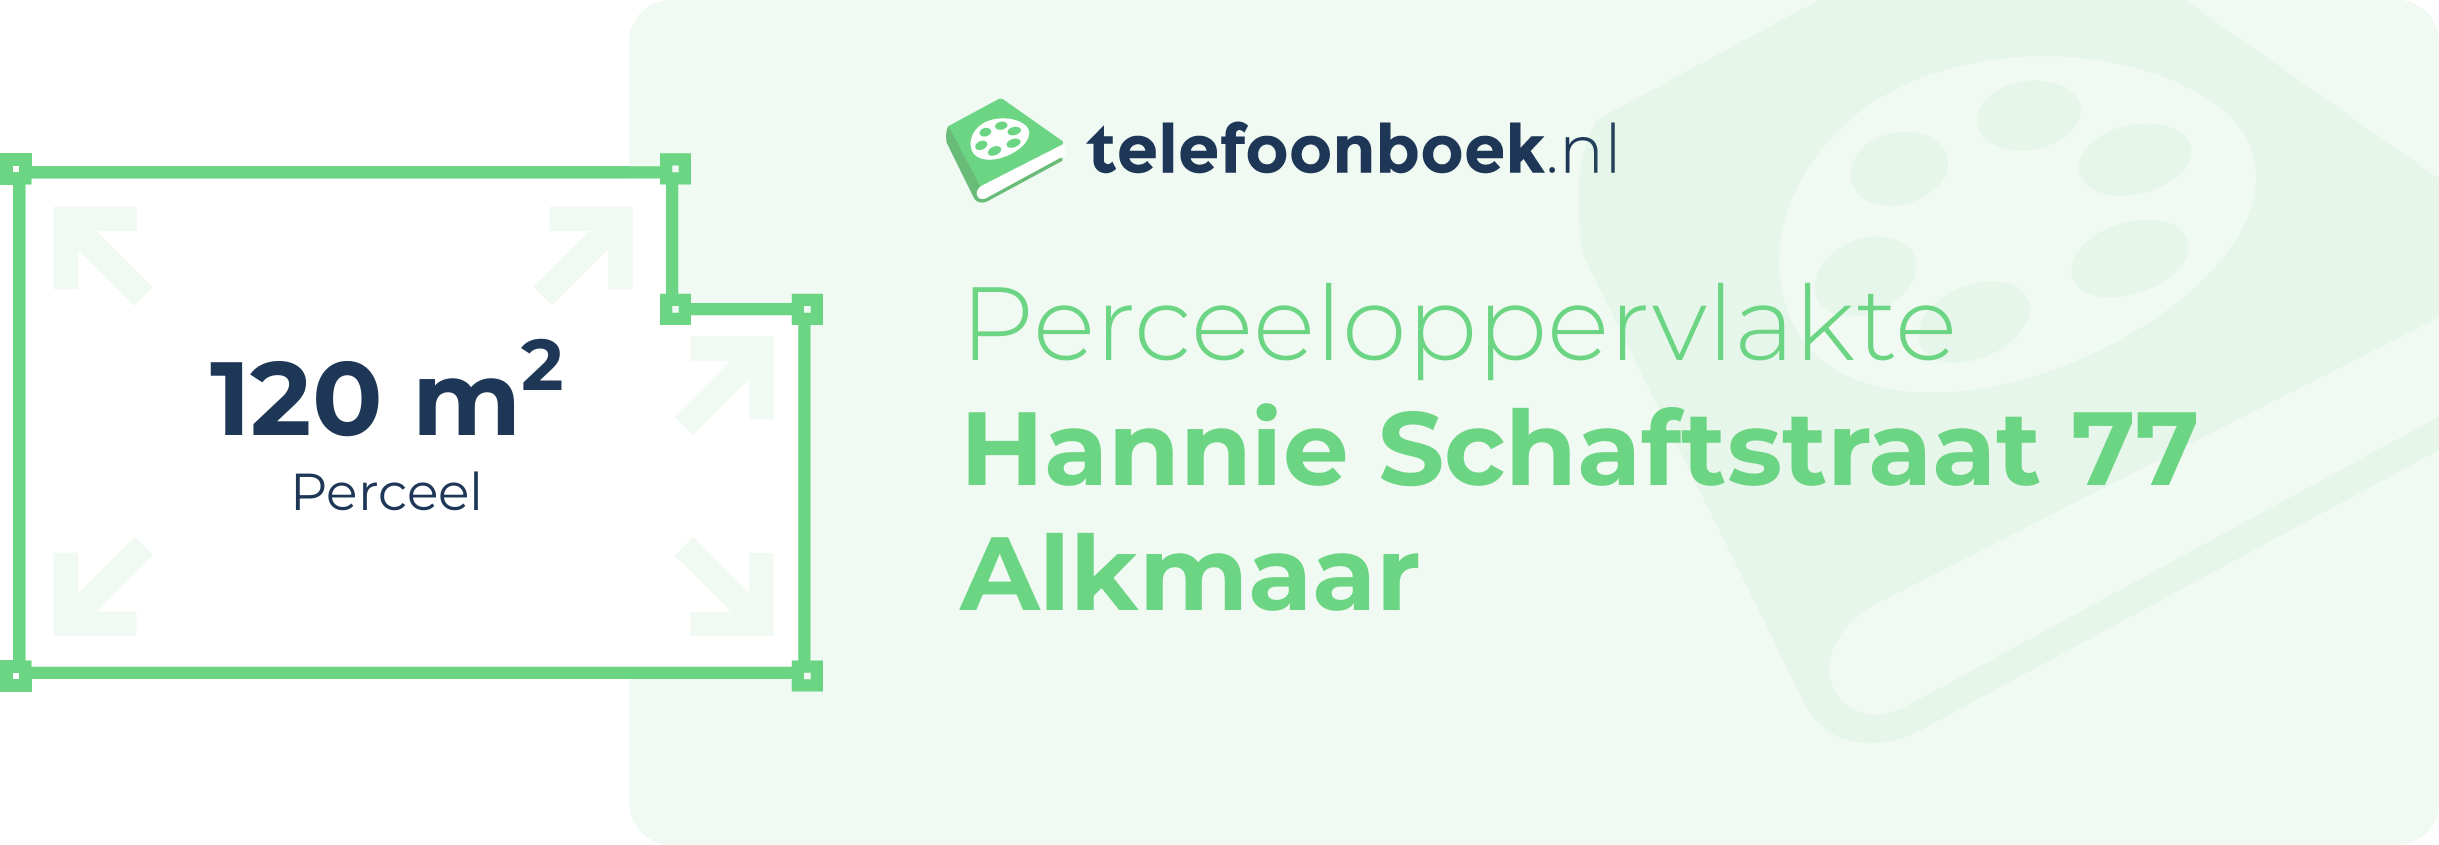 Perceeloppervlakte Hannie Schaftstraat 77 Alkmaar